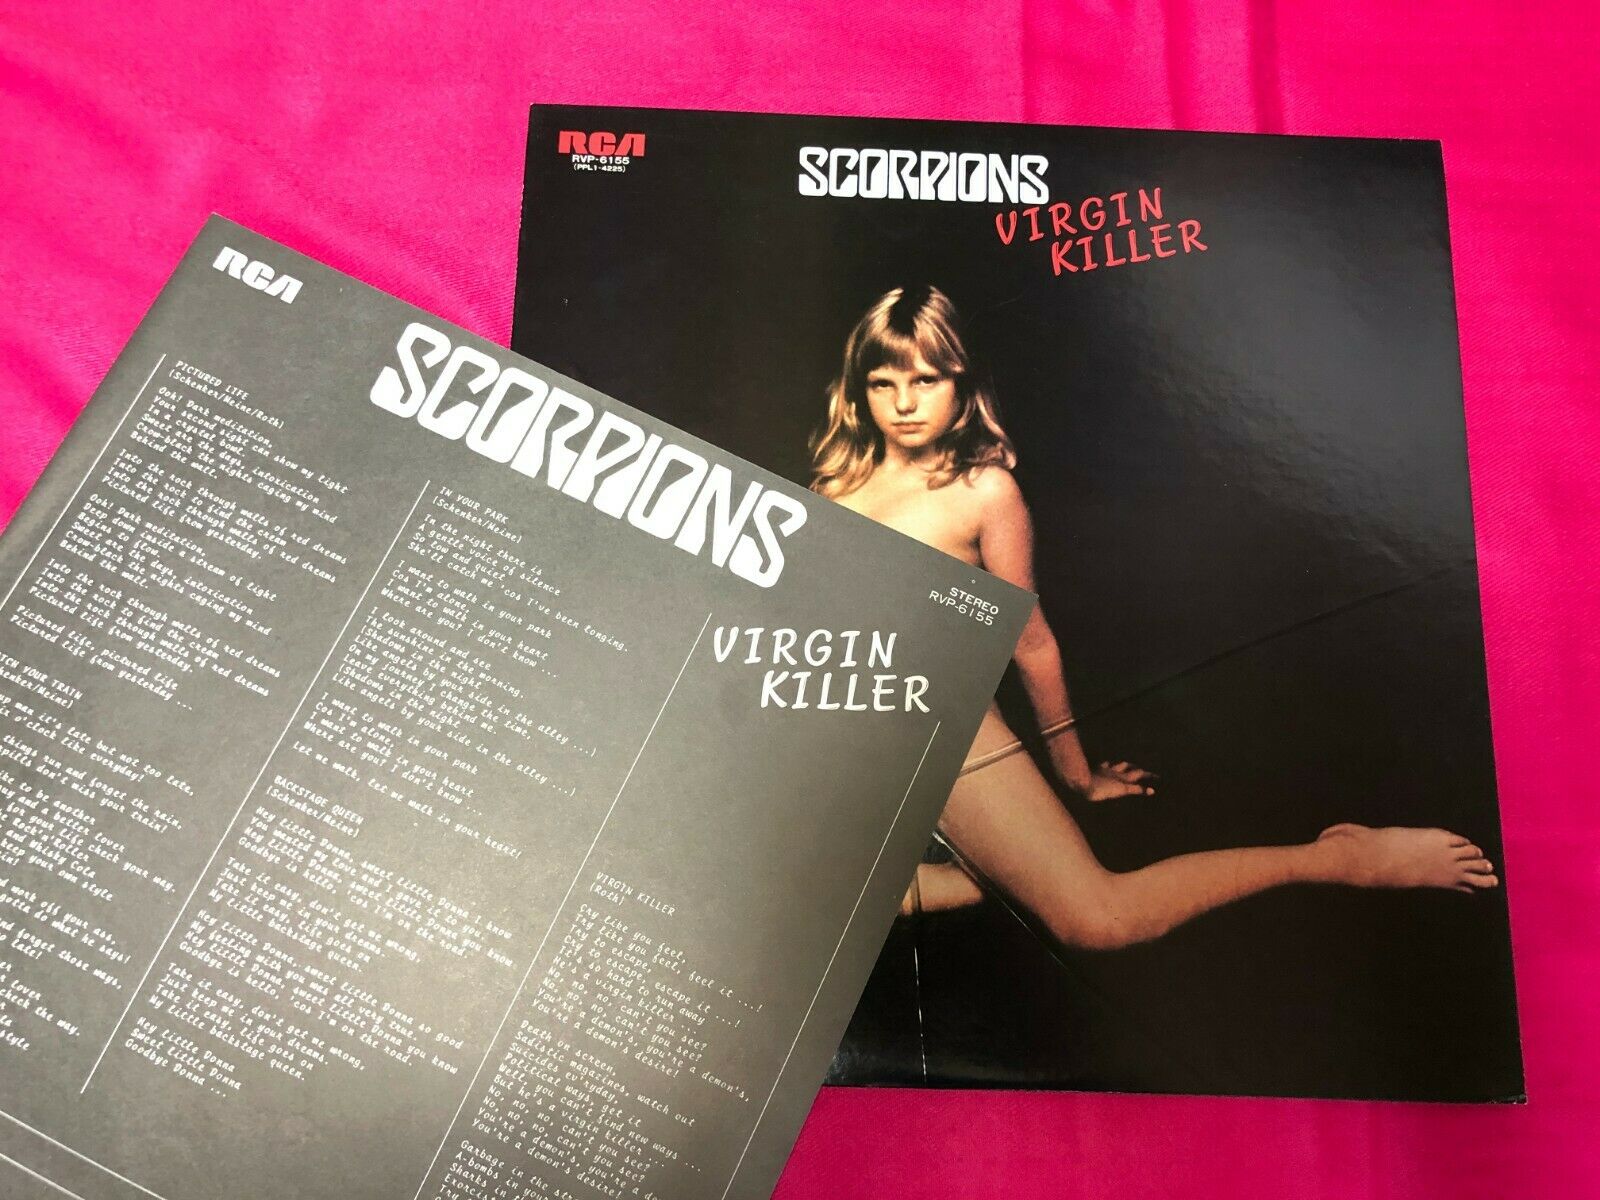 scorpions virgin killer album cover